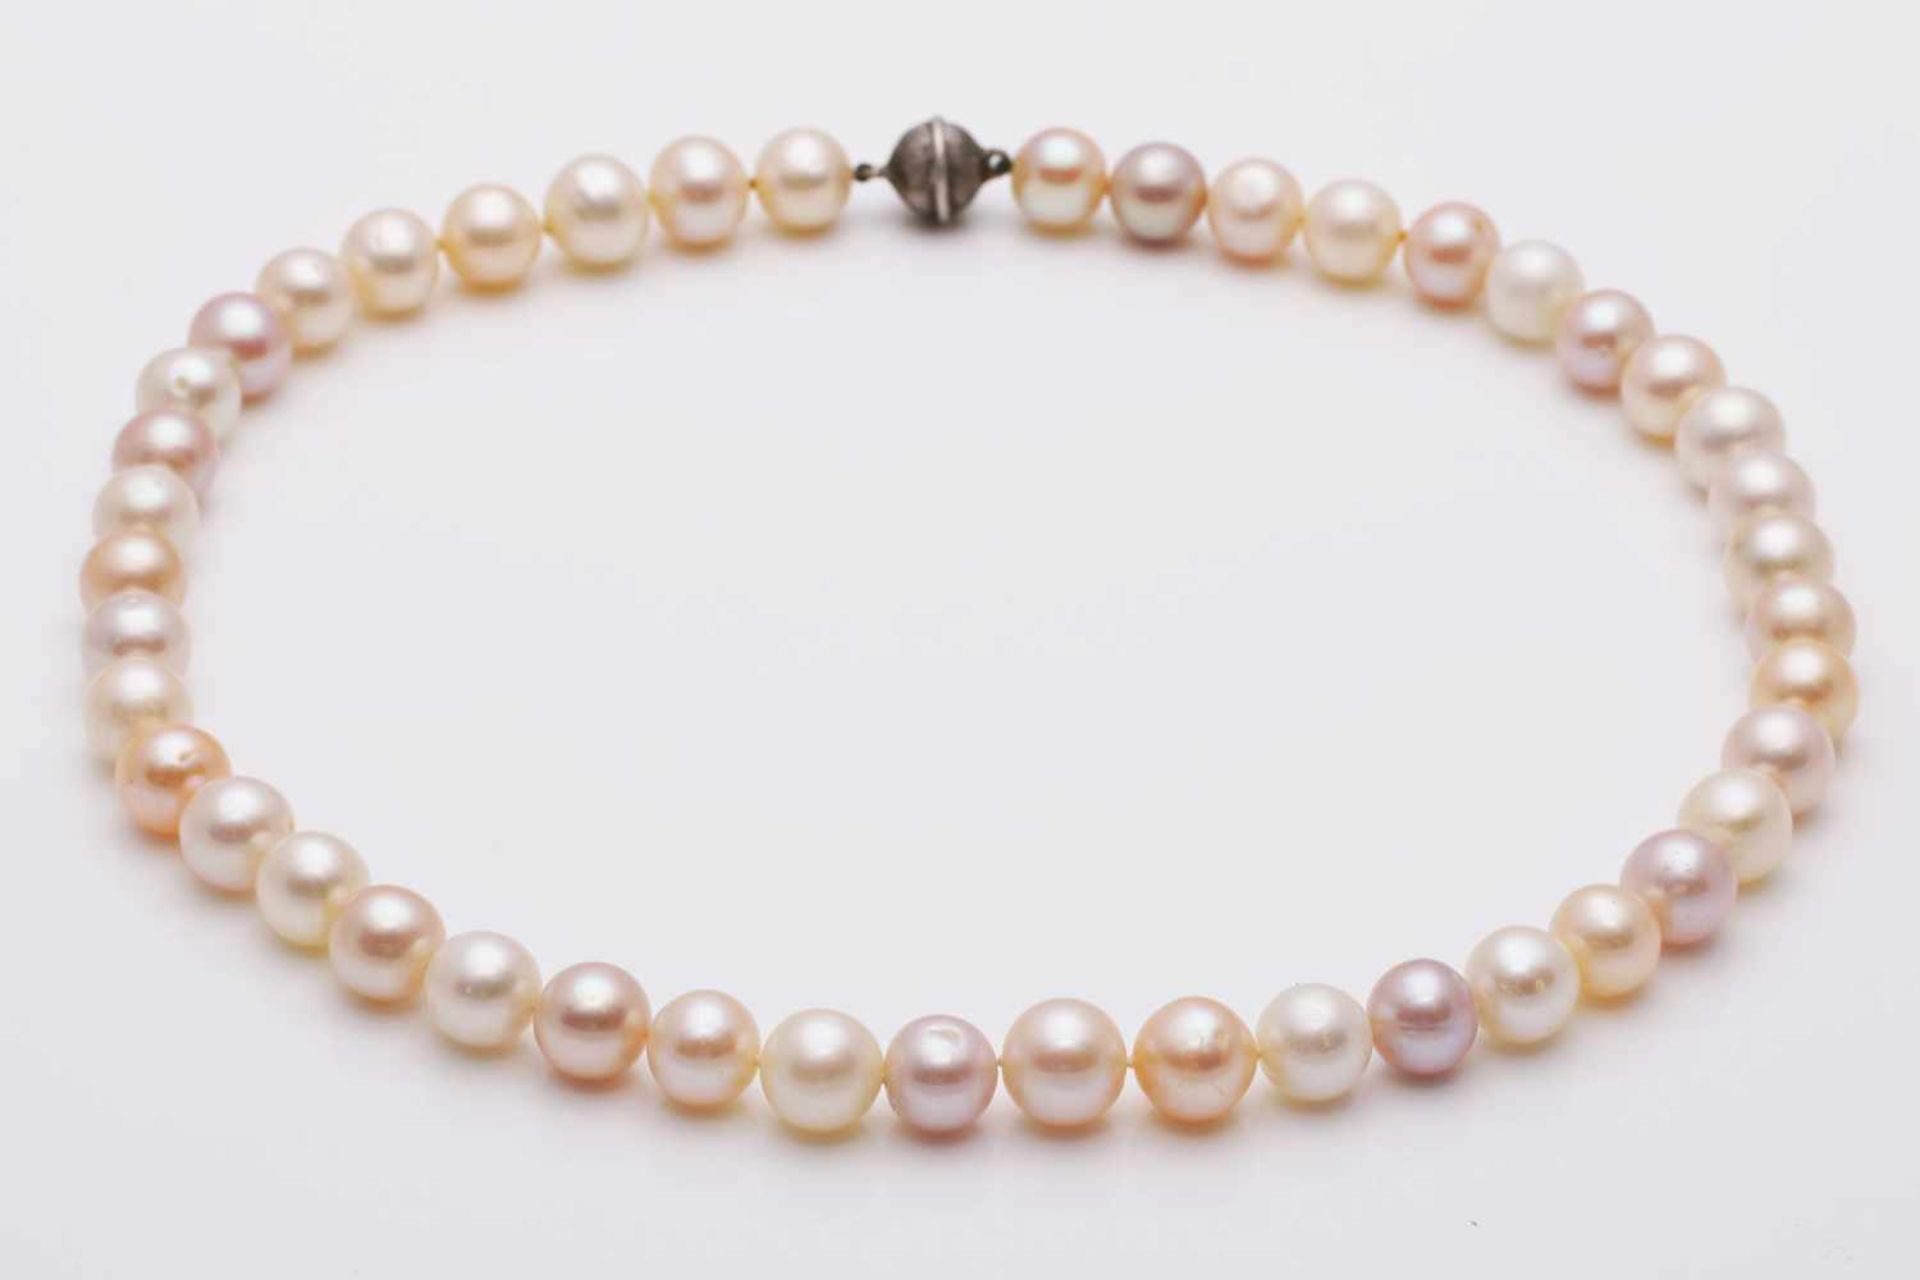 Süßwasser Perlenkette 44 Perlen mit einem Durchmesser von ca. 10-12mm, multicolor (blassrosa,